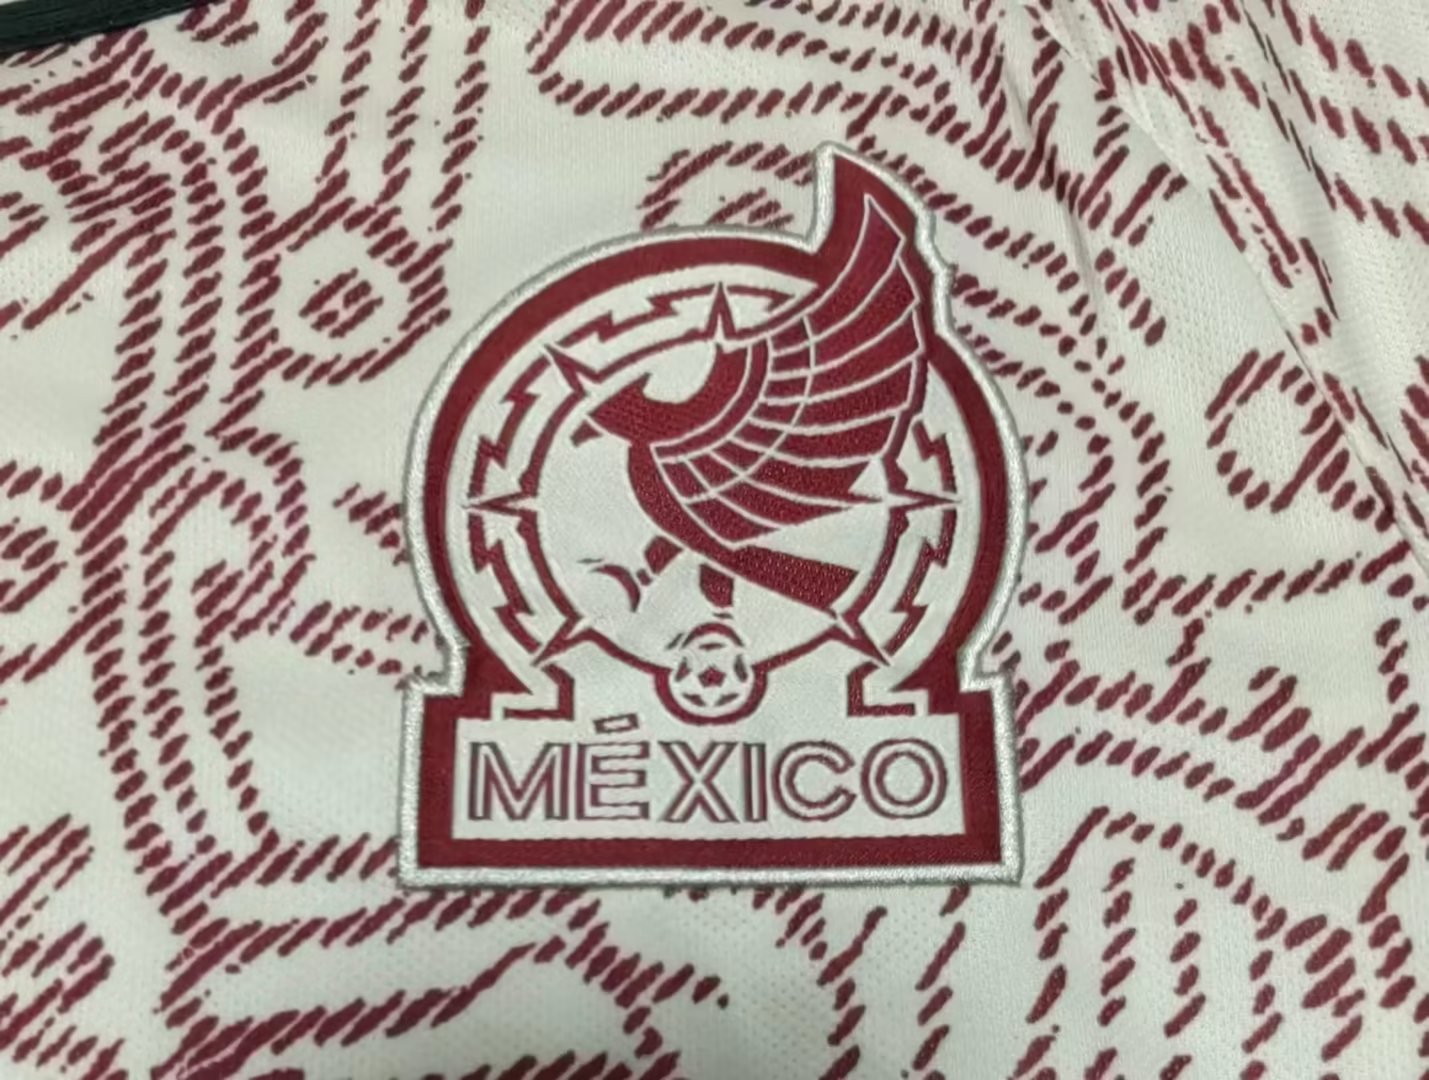 22/23 Mexico Away Kit